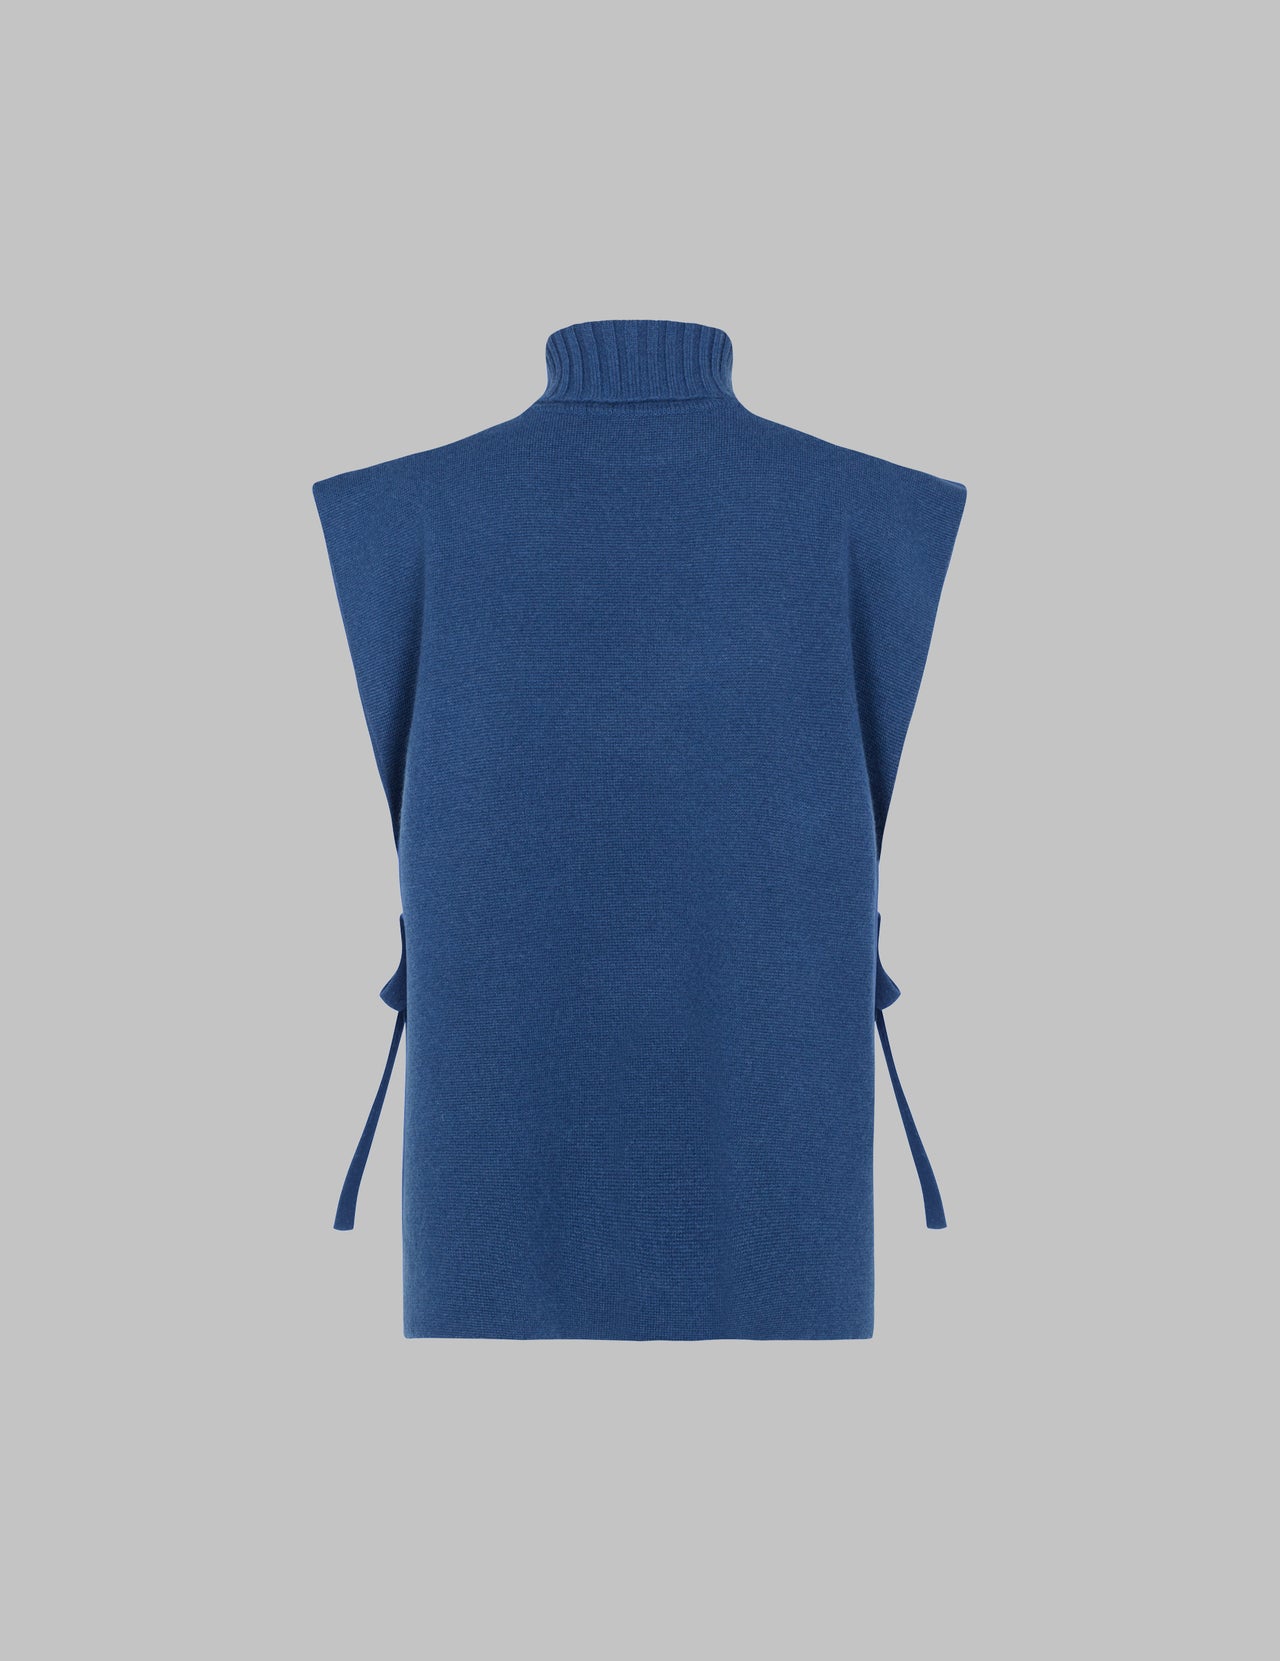  Prussian Blue Double Layer Cashmere Vest  